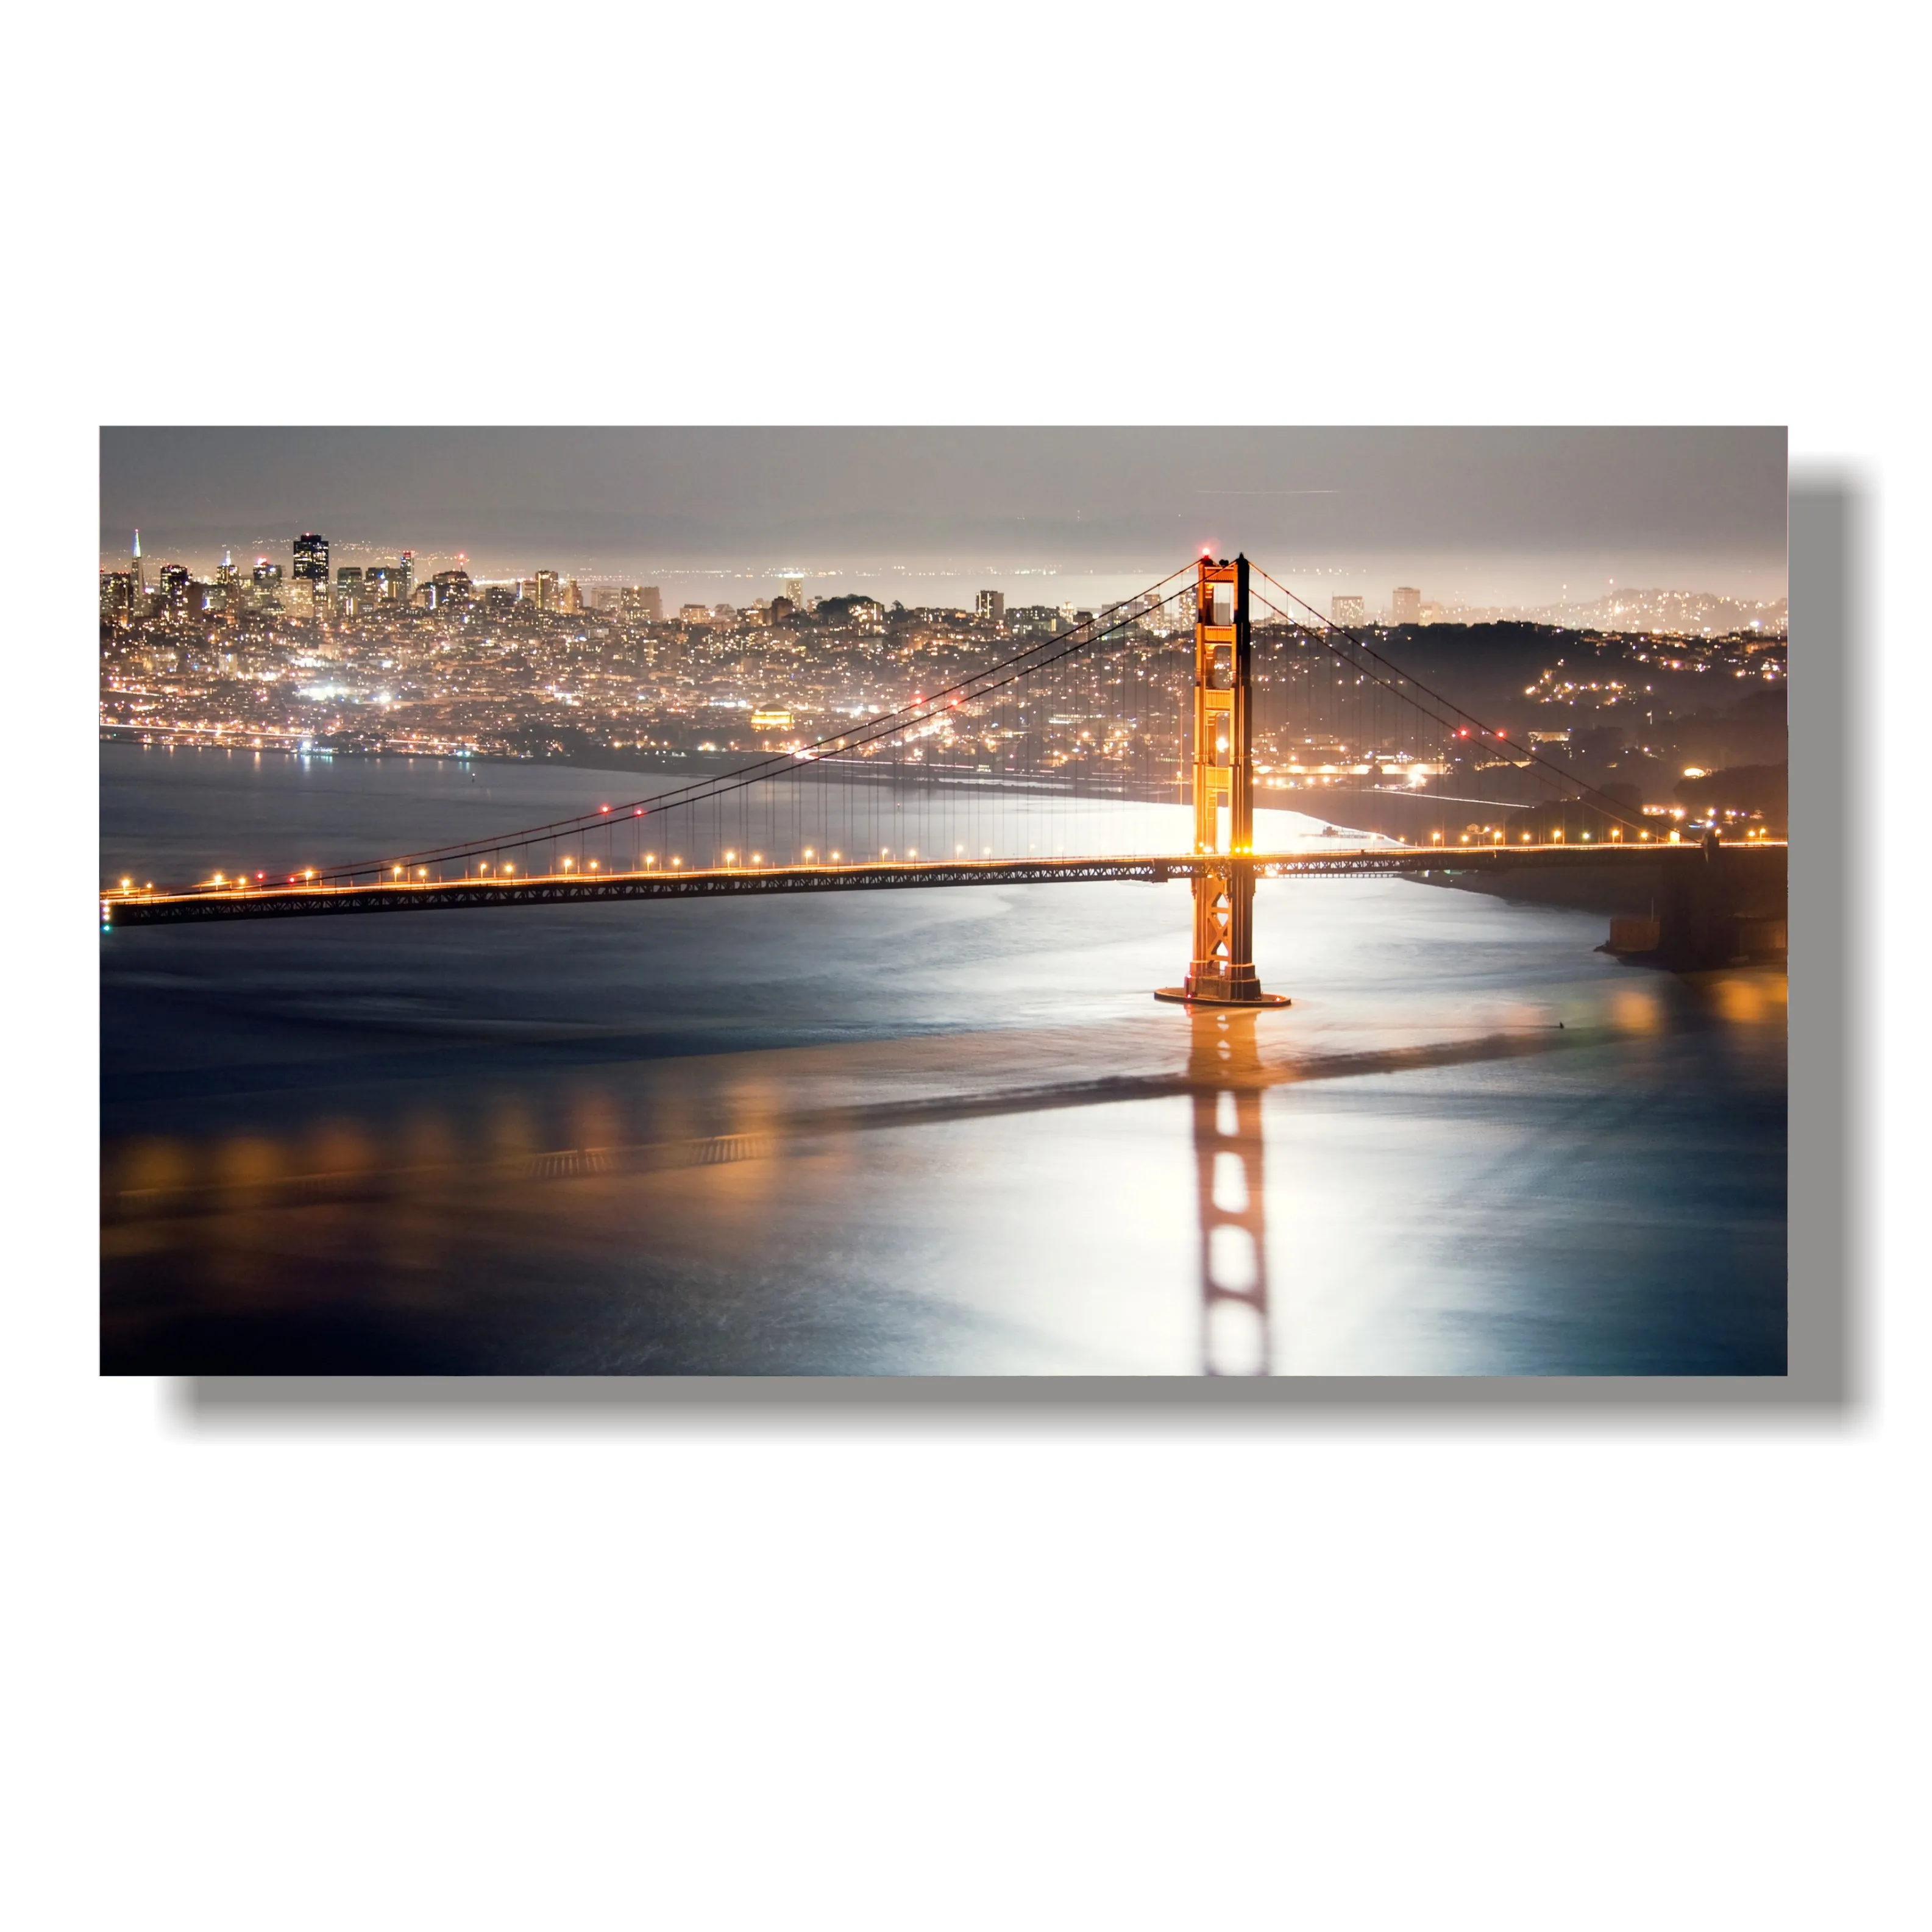 

A New Day Begins Golden Gate Bridge San Francisco Photograph Wall Décor Art Print Poster 24x43 Inch